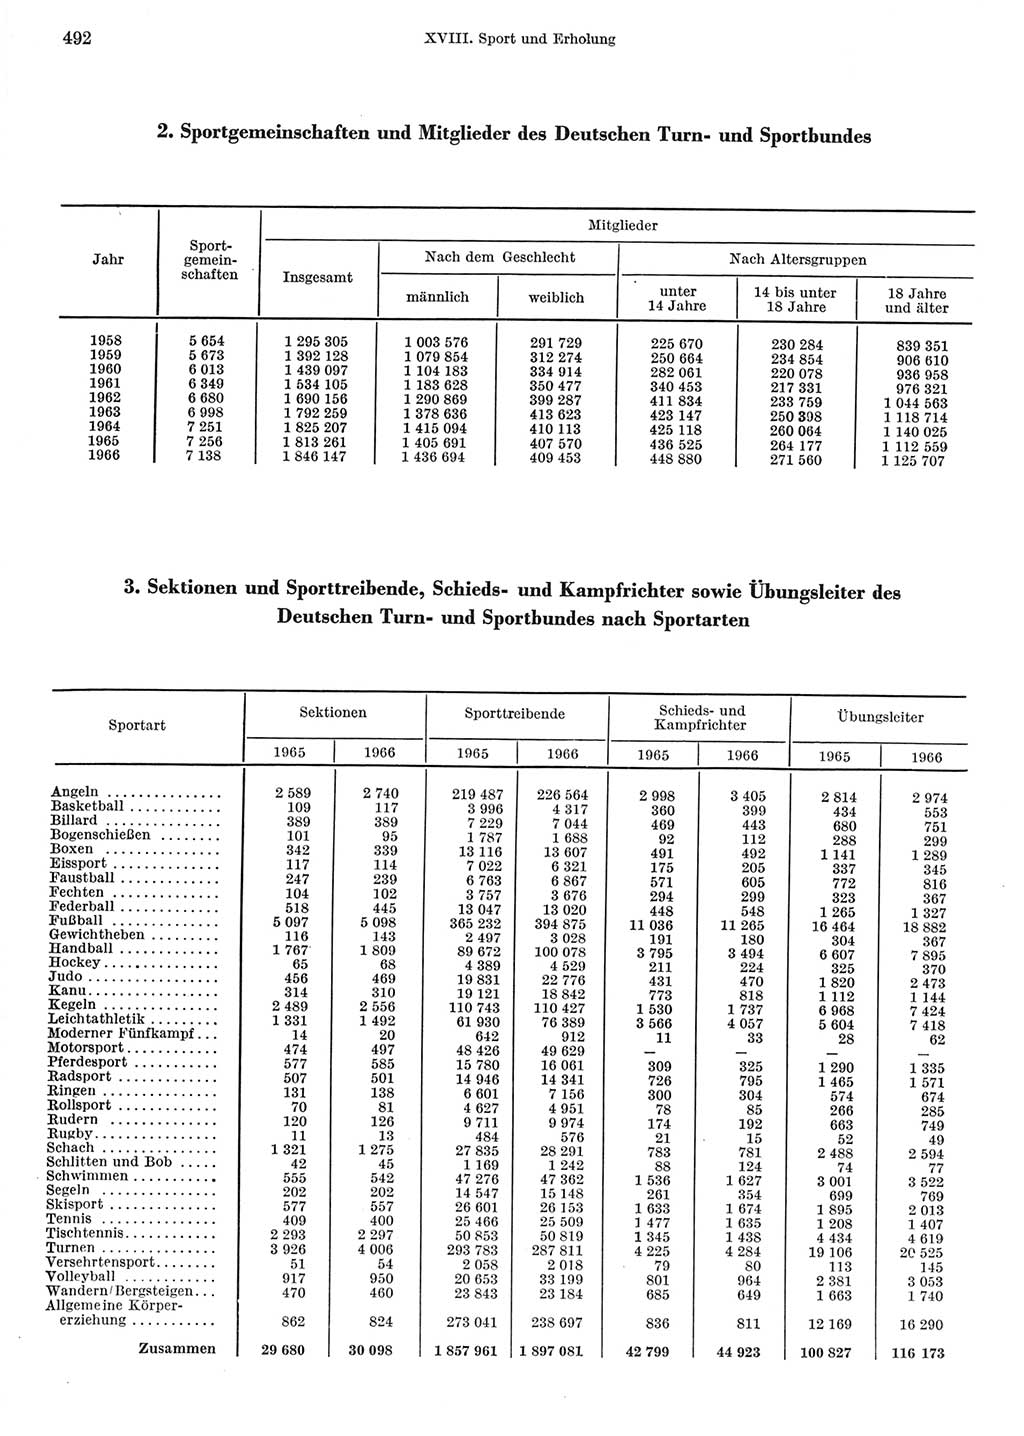 Statistisches Jahrbuch der Deutschen Demokratischen Republik (DDR) 1967, Seite 492 (Stat. Jb. DDR 1967, S. 492)